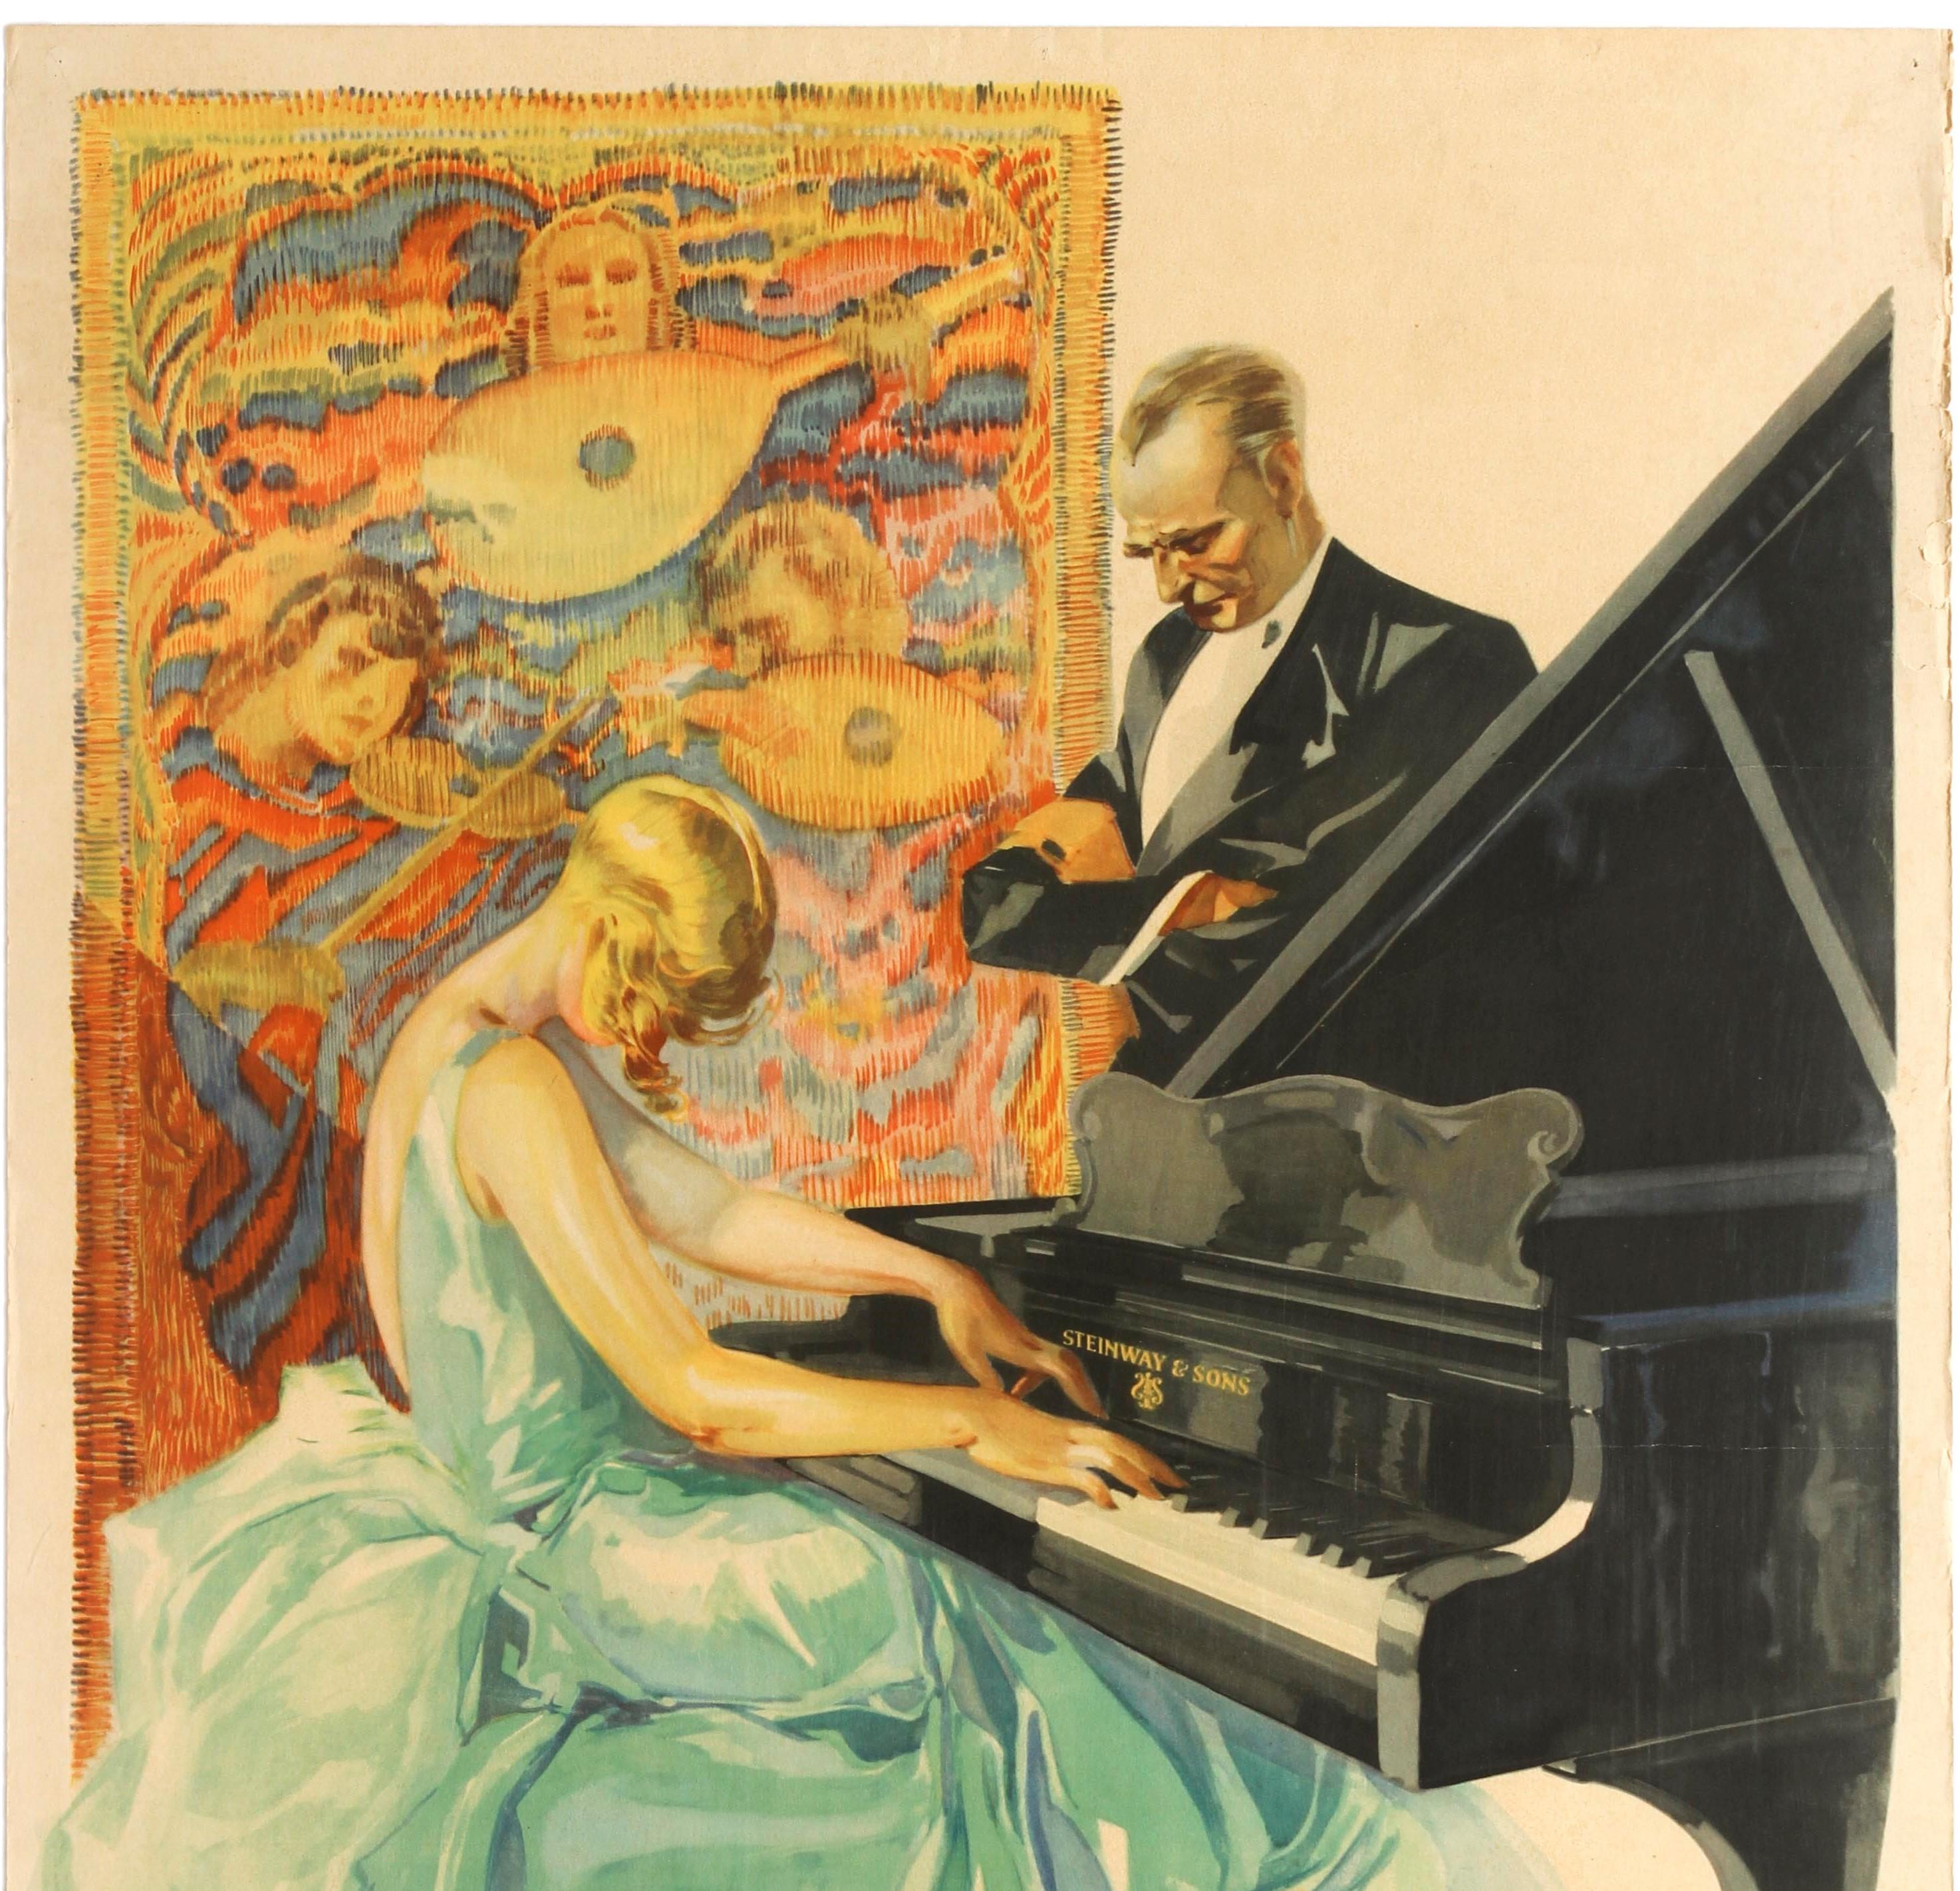 Original-Werbeplakat für Steinway-Klaviere mit einer großartigen Illustration des deutschen Künstlers Werner Von Axster-Heudtlass (1898-1949), die eine junge Dame in einem märchenhaften Kleid zeigt, die um den Klavierhocker herumfließt und das